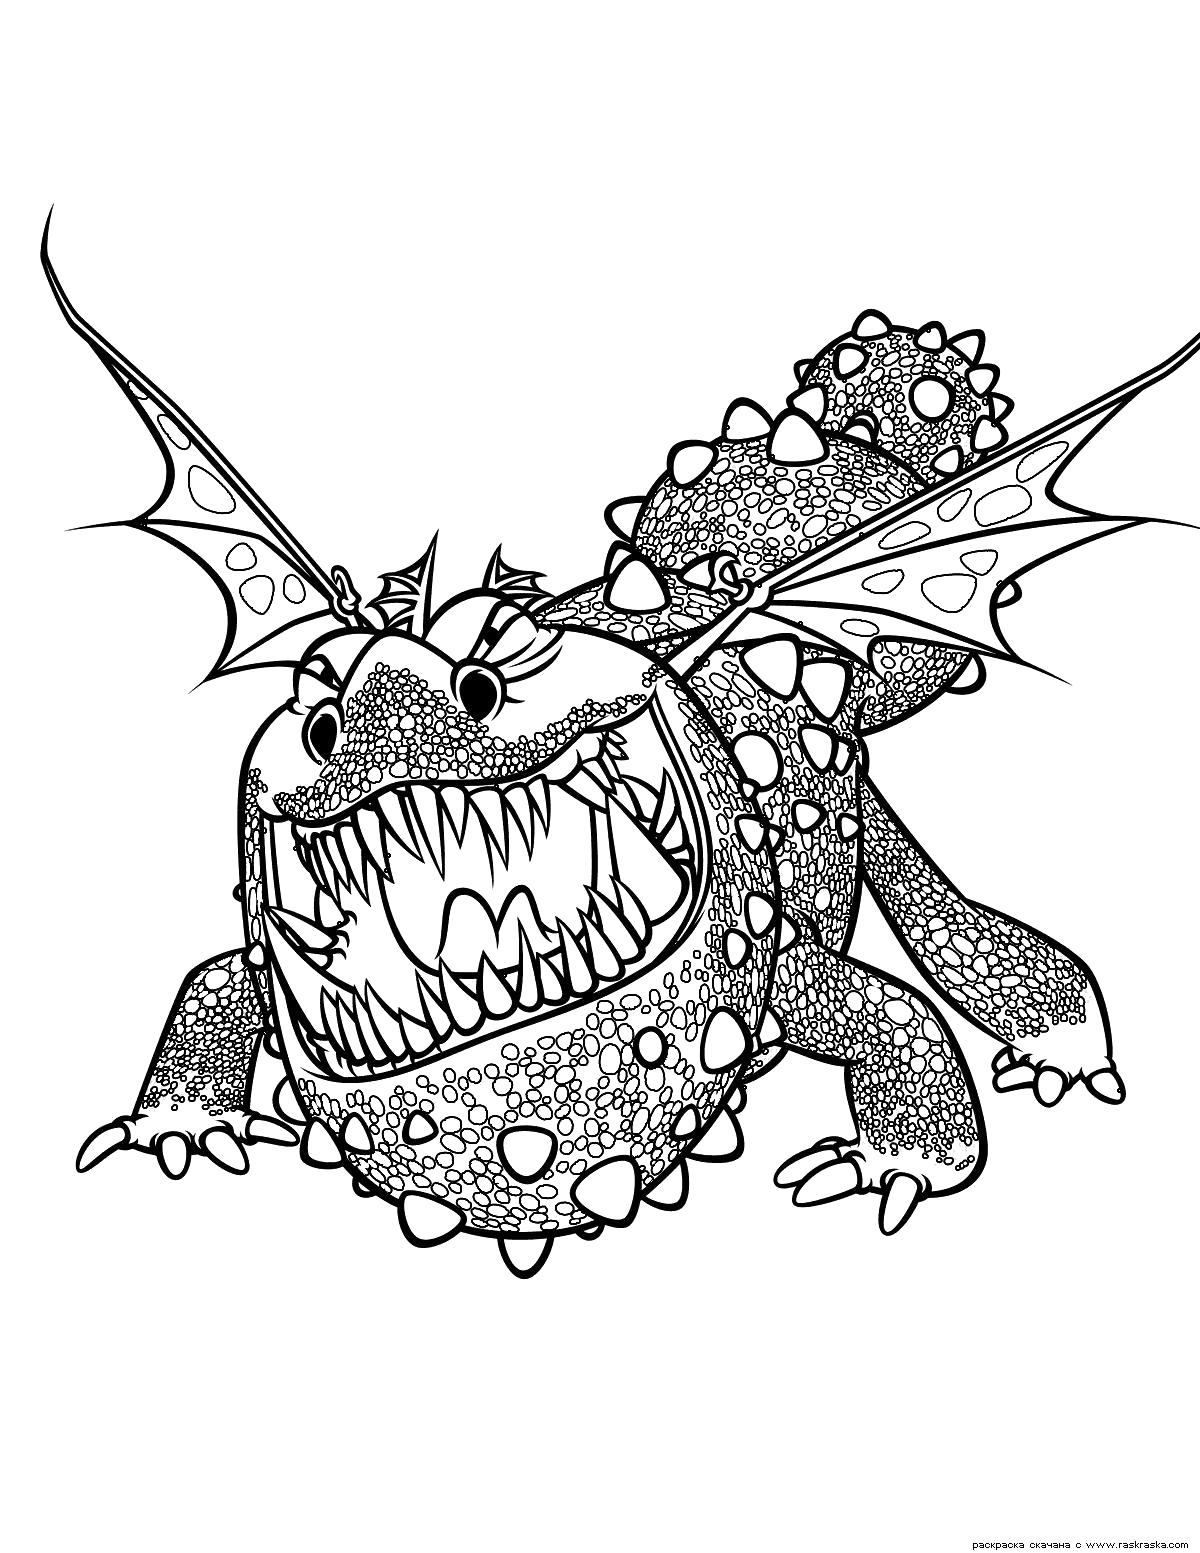 Раскраска Раскраска Дракон Громмель. Раскраска Как приручить дракона, раскраска для детей скачать бесплатно. мифические существа